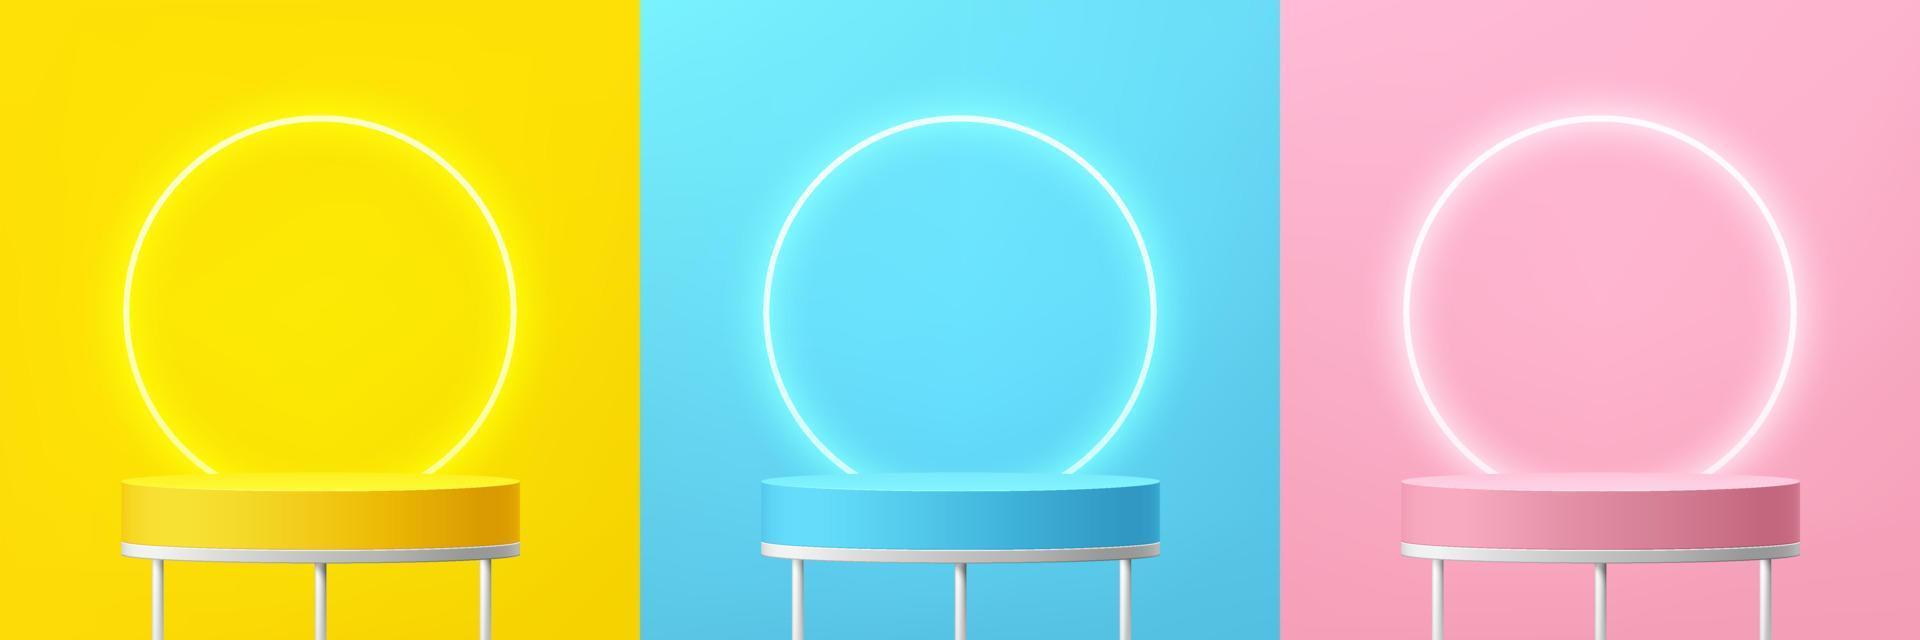 conjunto de estante 3d abstracto o podio de pie en color pastel de escena de pared amarillo, azul, rosa con fondo de anillo de neón. diseño de formas geométricas de representación vectorial para la presentación de productos cosméticos. vector